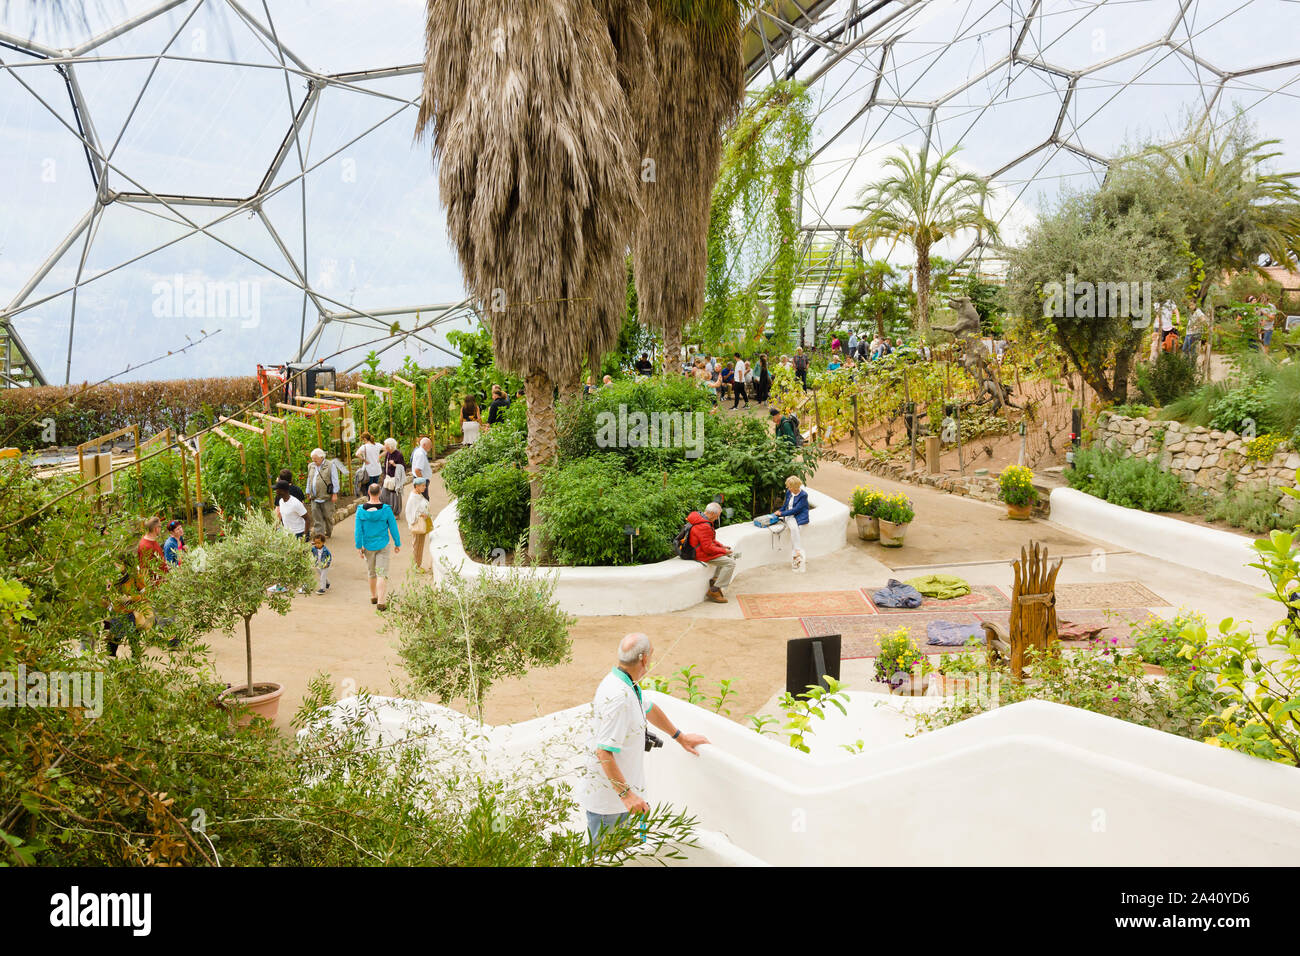 L'Eden Project biome méditerranéen une attraction touristique populaire construit dans une ancienne carrière avec des jardins tropicaux situé dans les dômes géants Banque D'Images